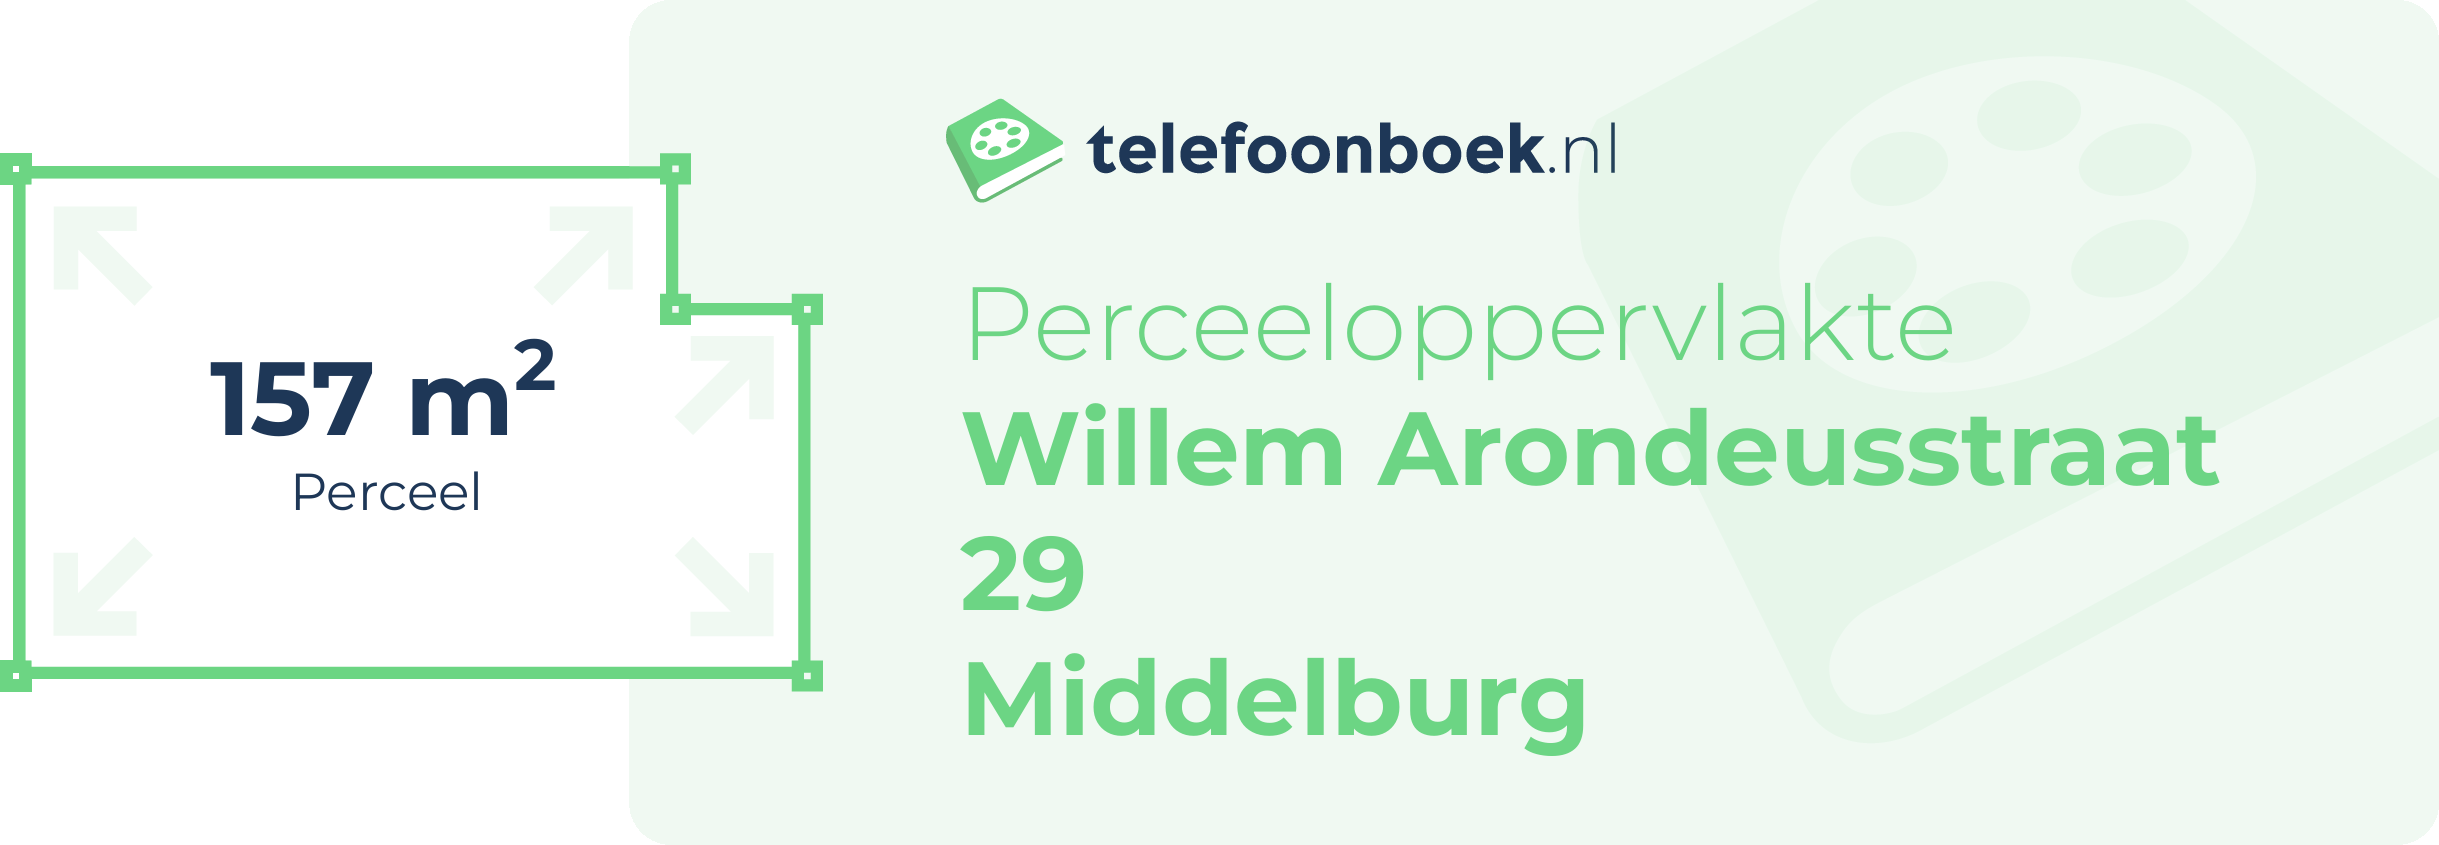 Perceeloppervlakte Willem Arondeusstraat 29 Middelburg